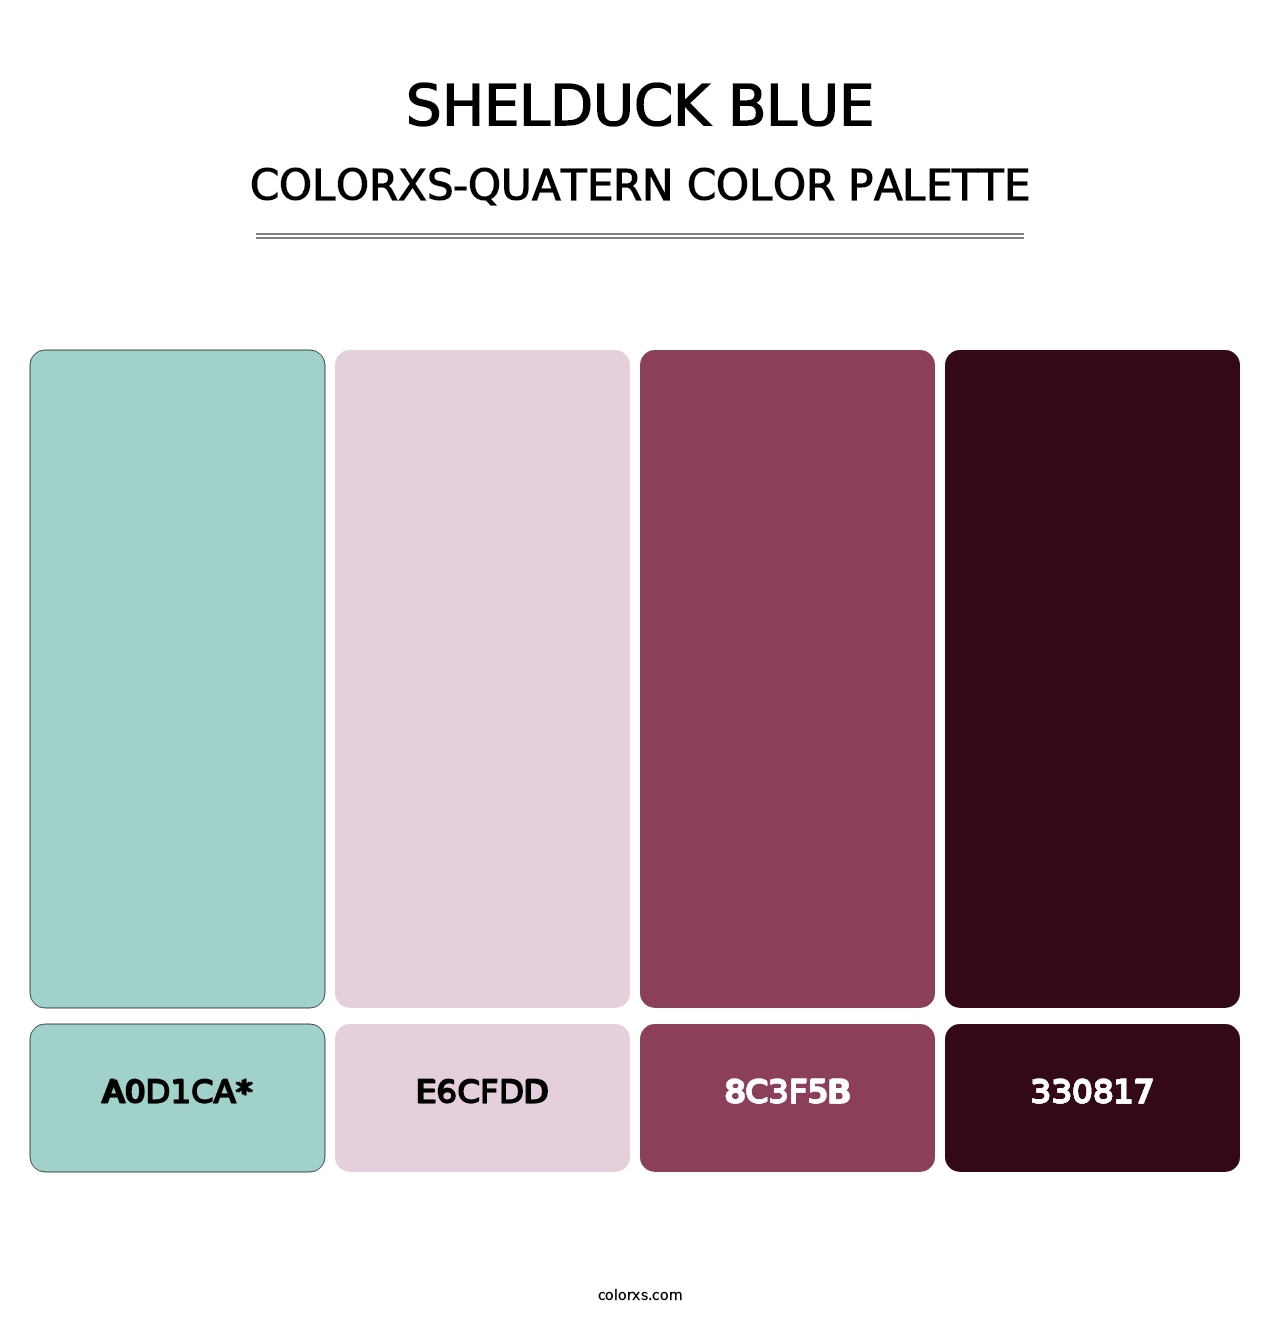 Shelduck Blue - Colorxs Quatern Palette